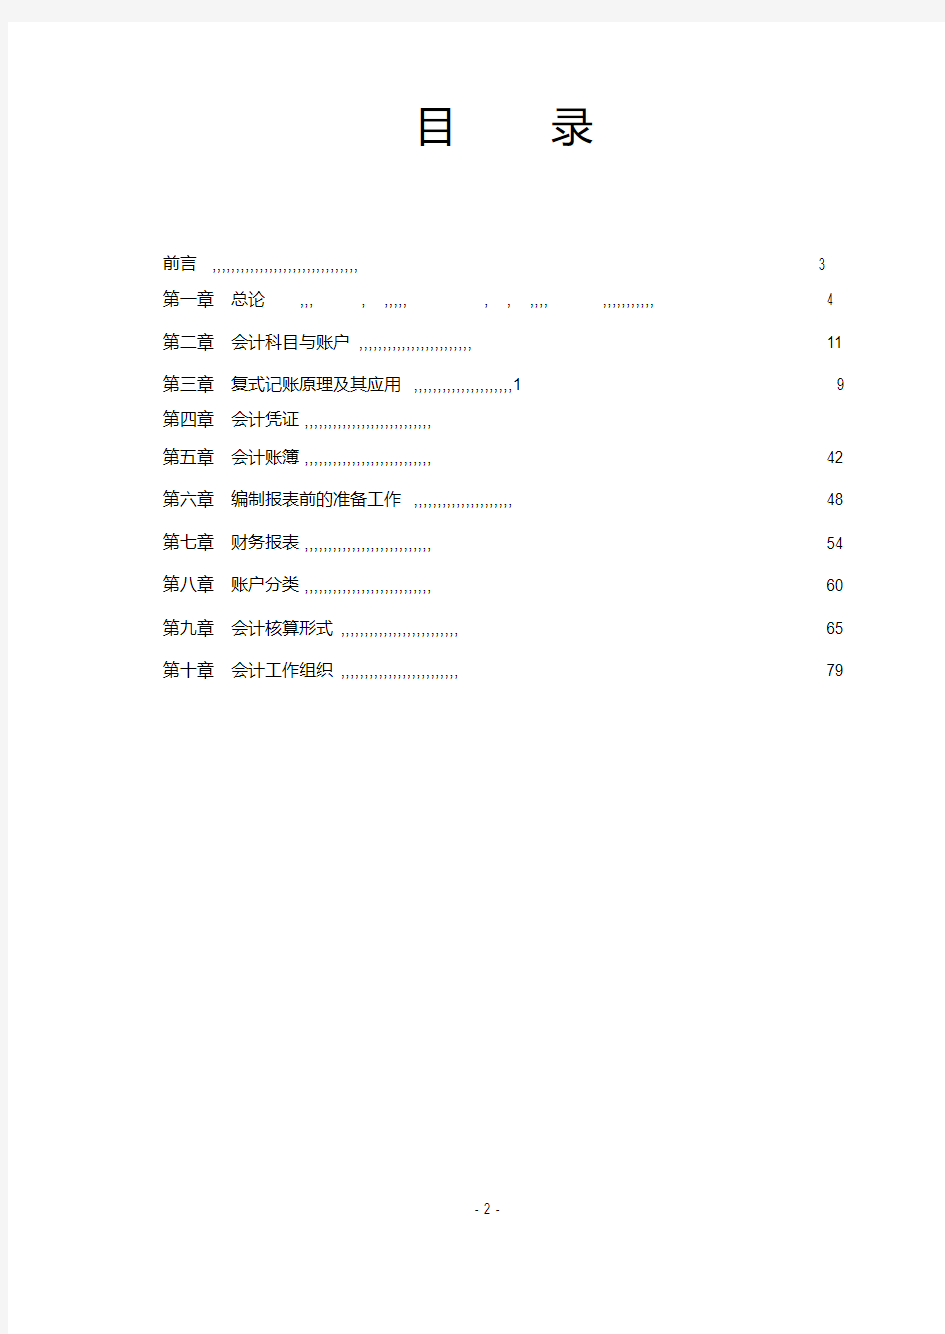 会计学原理习题-新版.pdf